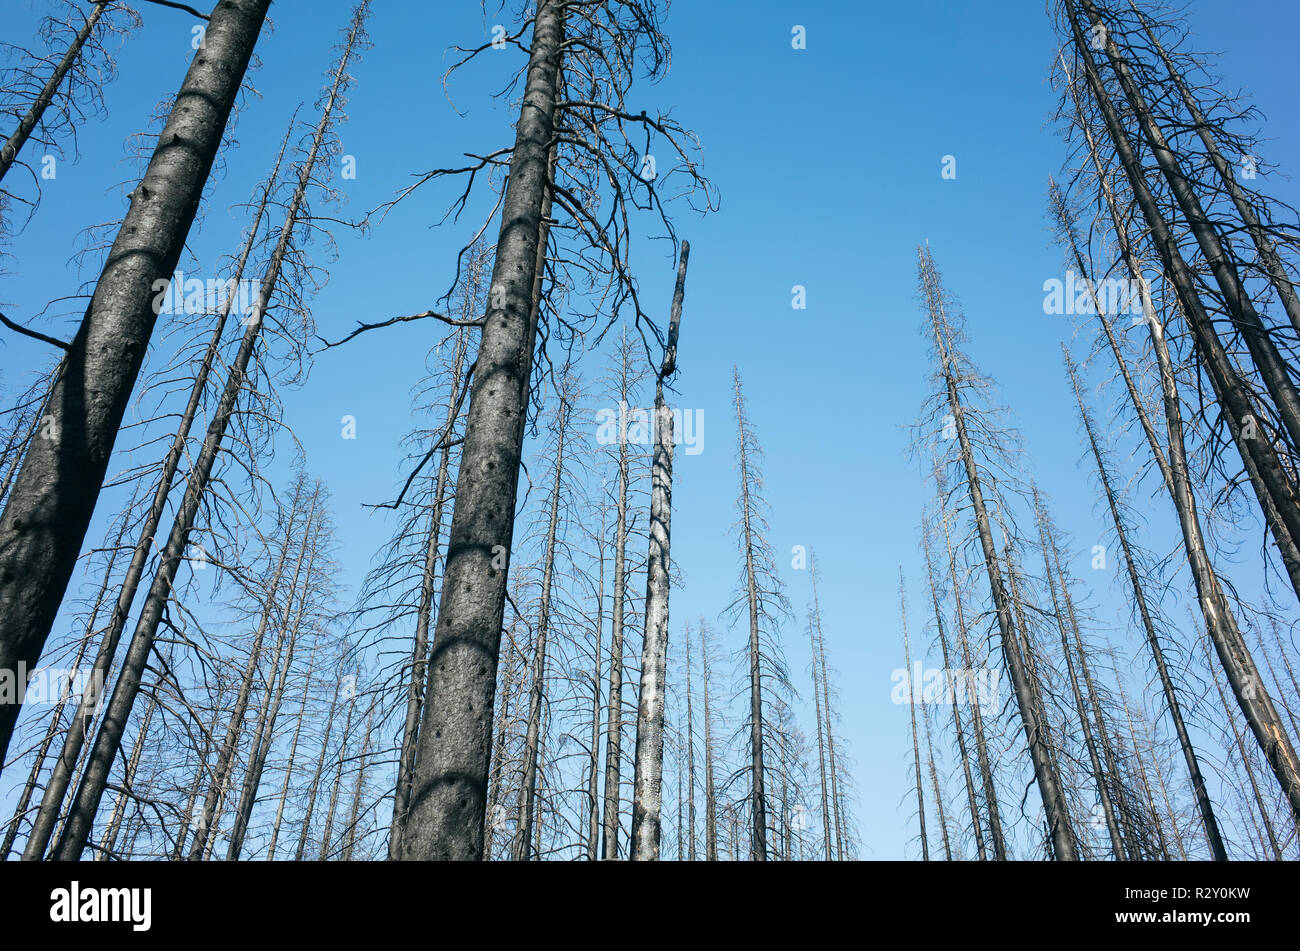 Le noir et blanc image inversée de la crête des Scandinaves feu de forêt arbres endommagés, près de Mount Rainier National Park Banque D'Images